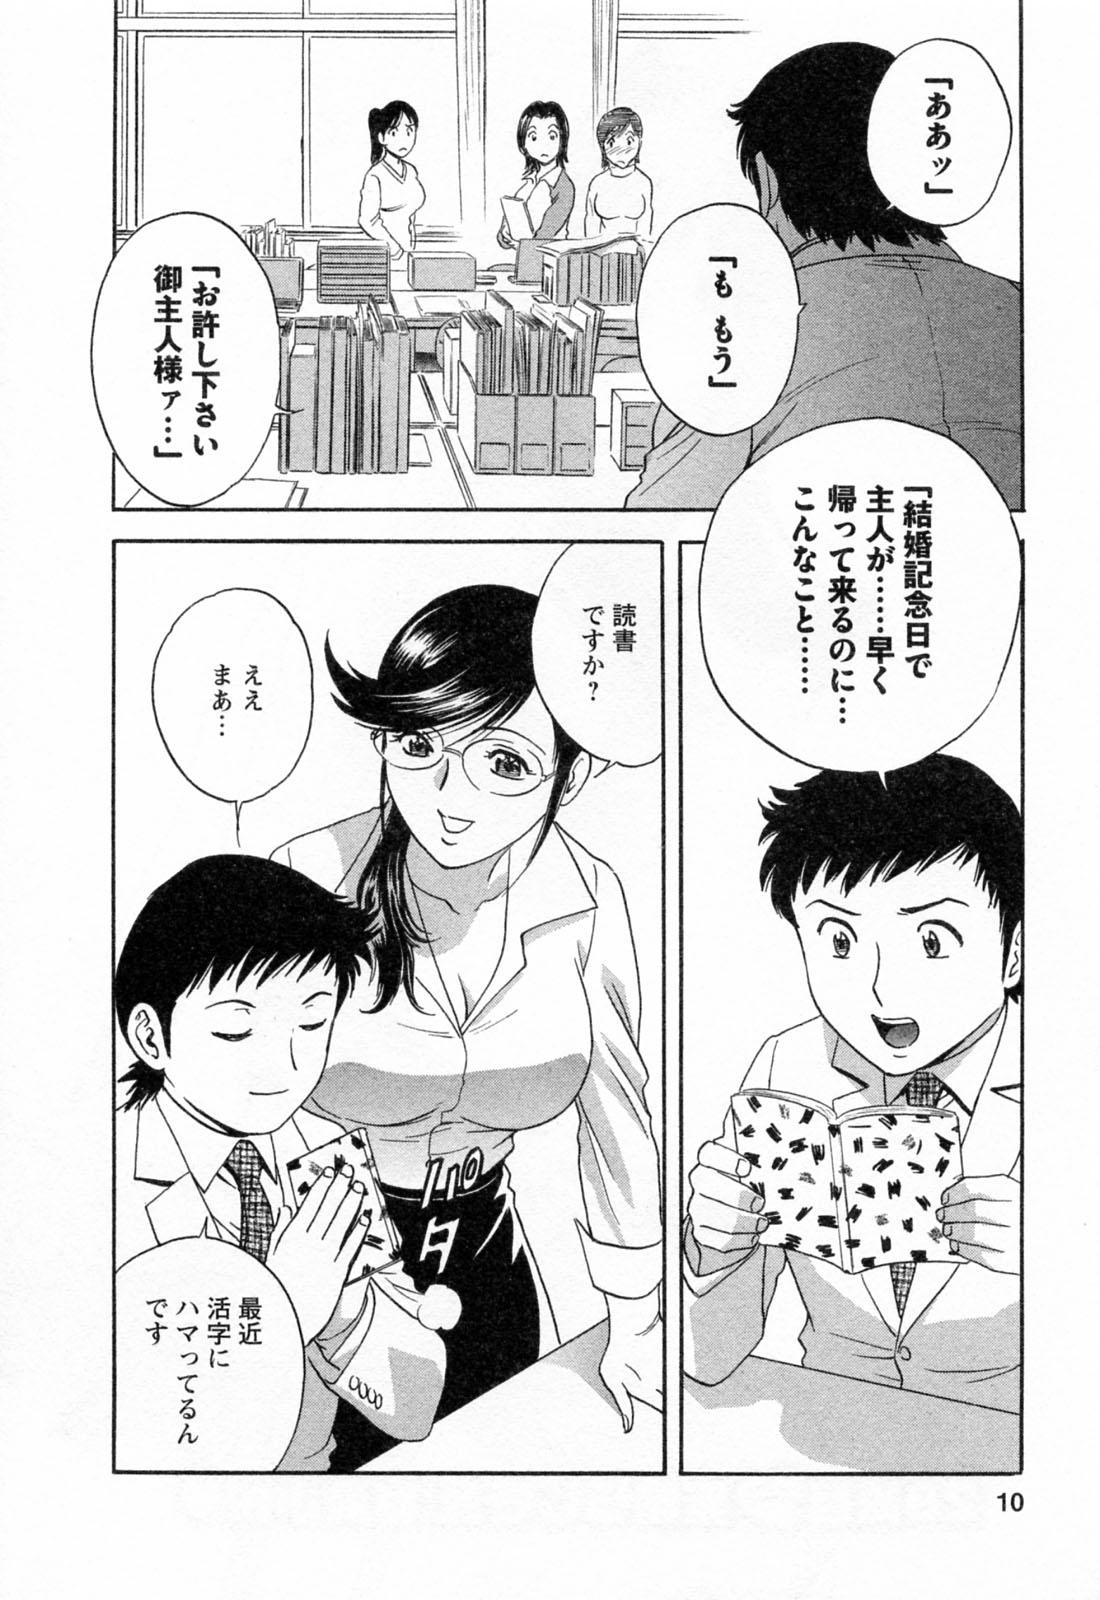 [Hidemaru] Mo-Retsu! Boin Sensei (Boing Boing Teacher) Vol.4 11